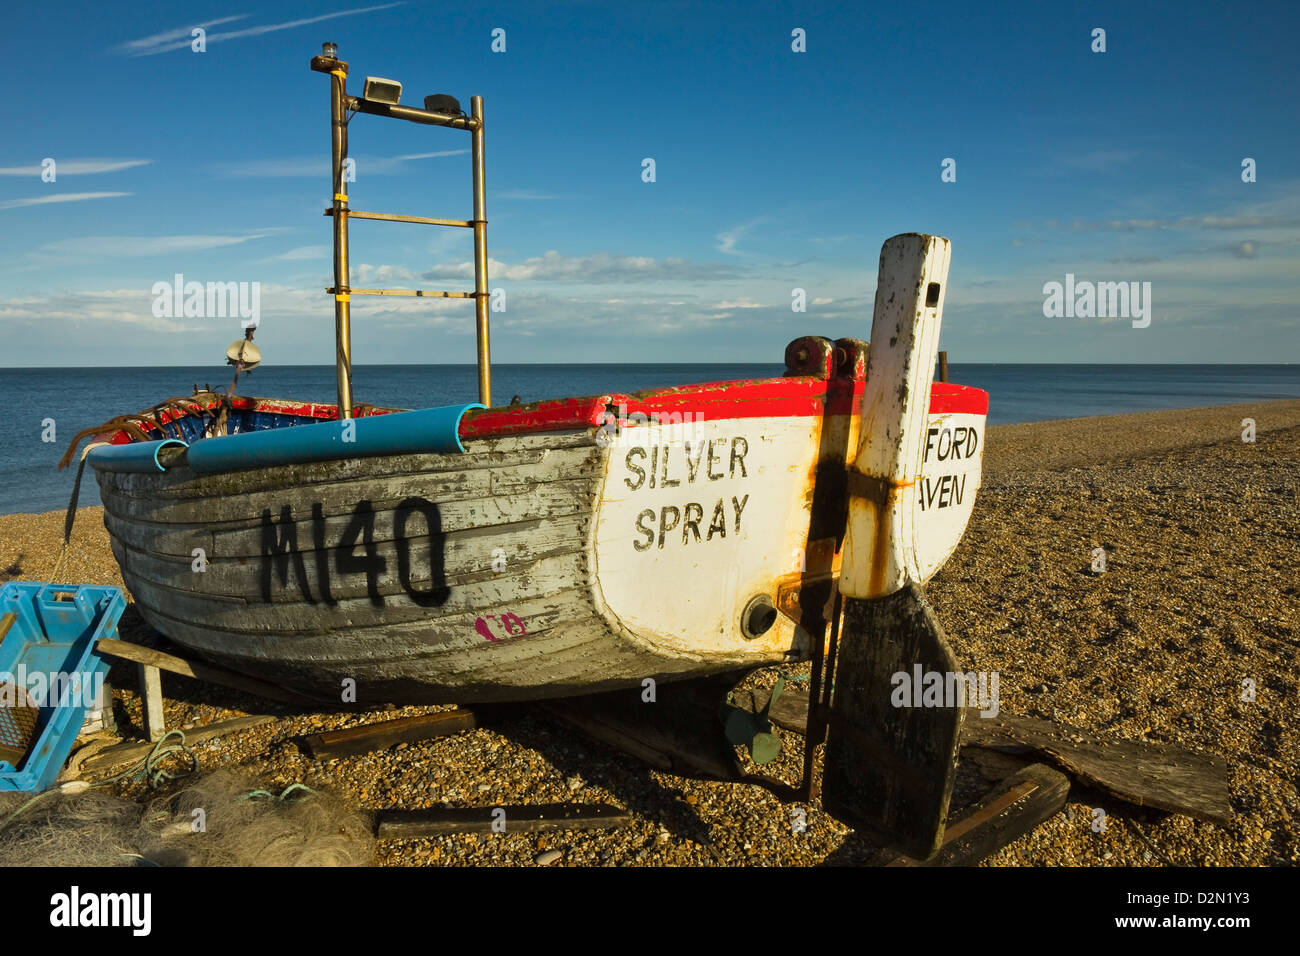 Bateau de pêche et des filets sur le front de plage de galets de cette populaire station balnéaire préservée, Aldeburgh, Suffolk, Angleterre, RU Banque D'Images